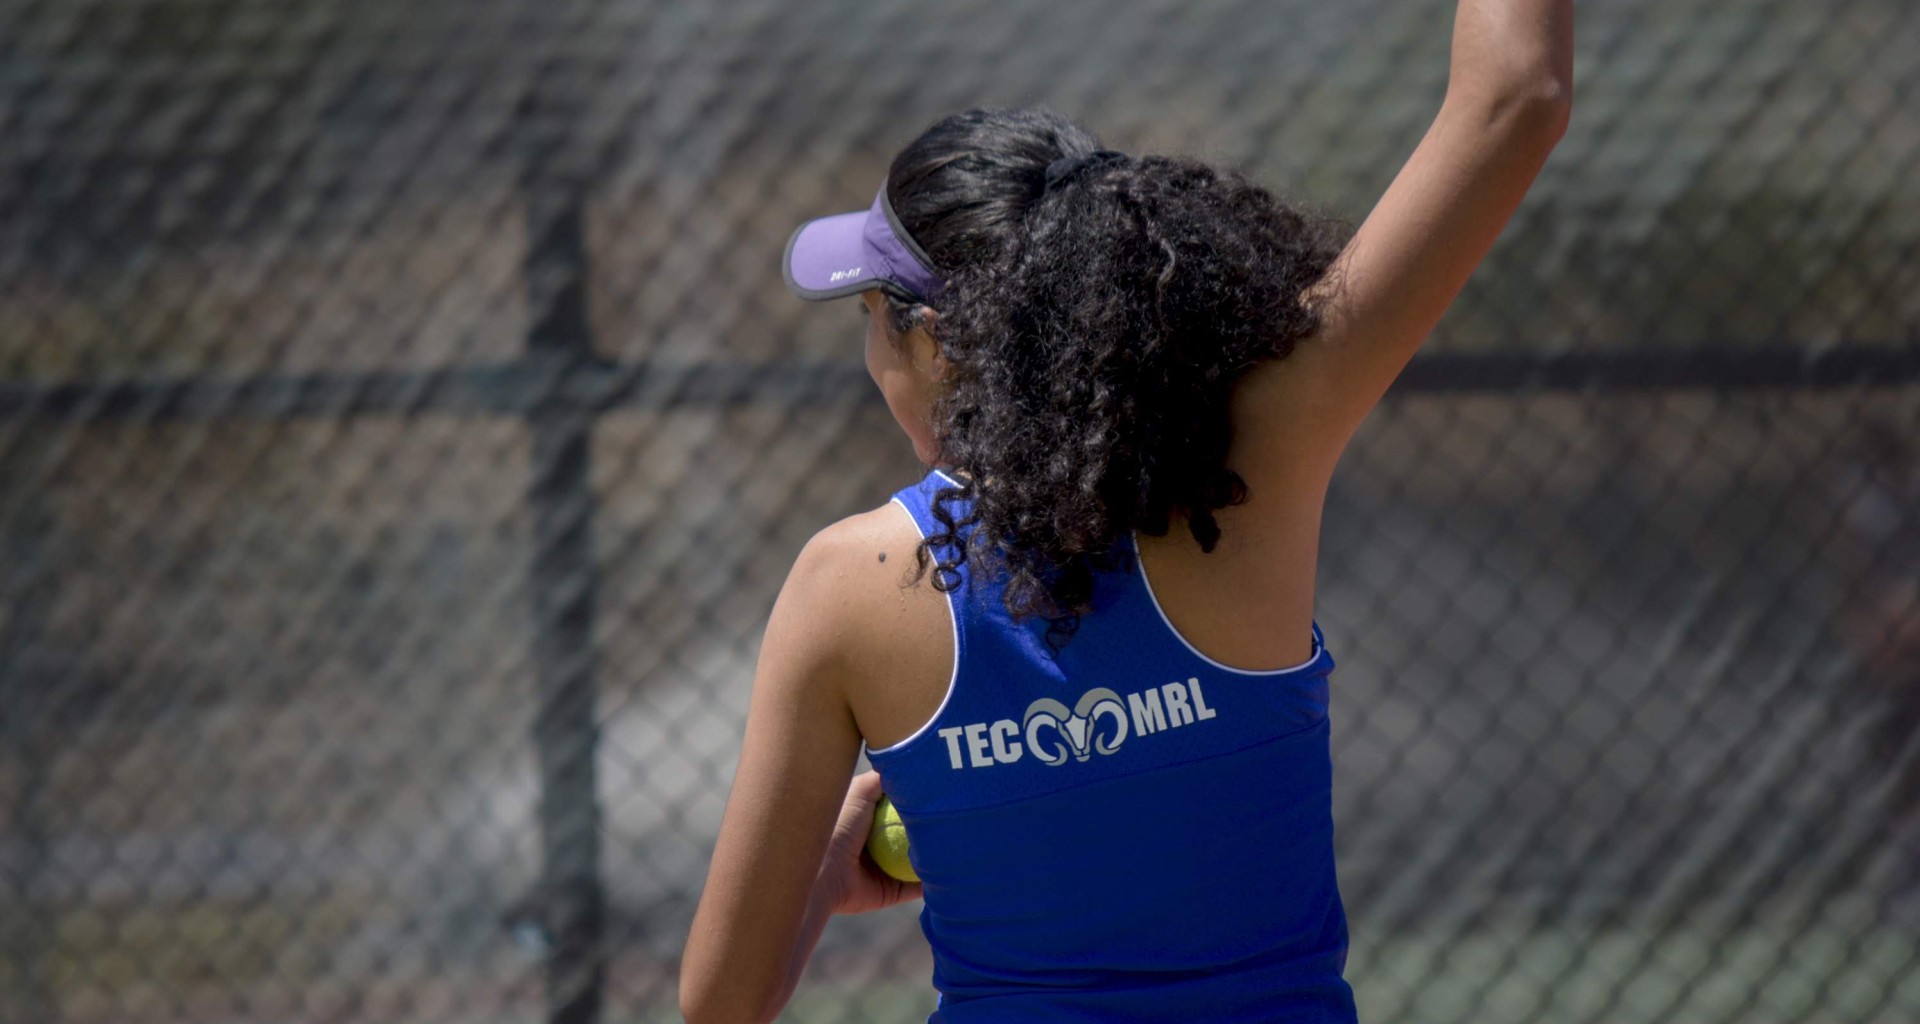 Destacan alumnos del Tec en competencias de tenis